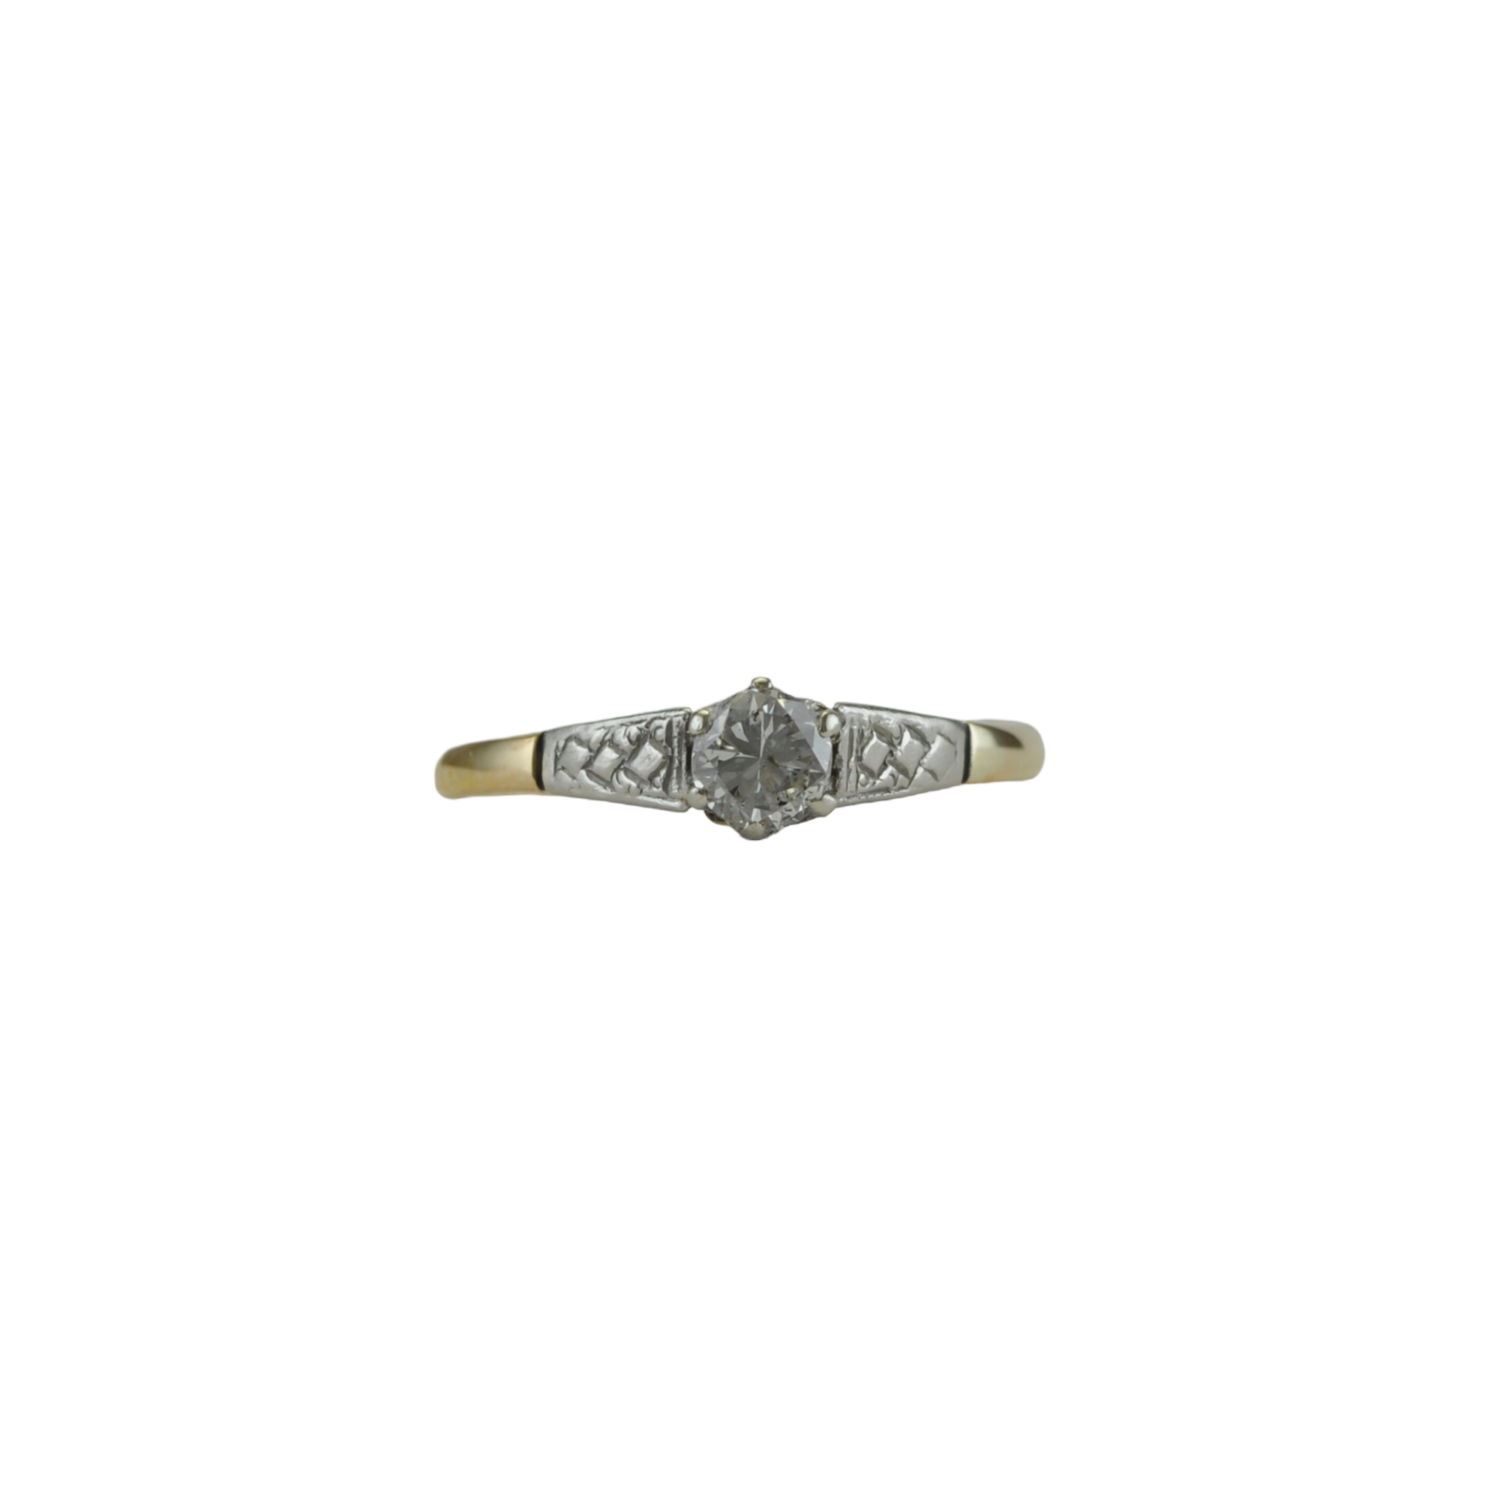 Antique Quarter Carat Diamond Engagement Ring